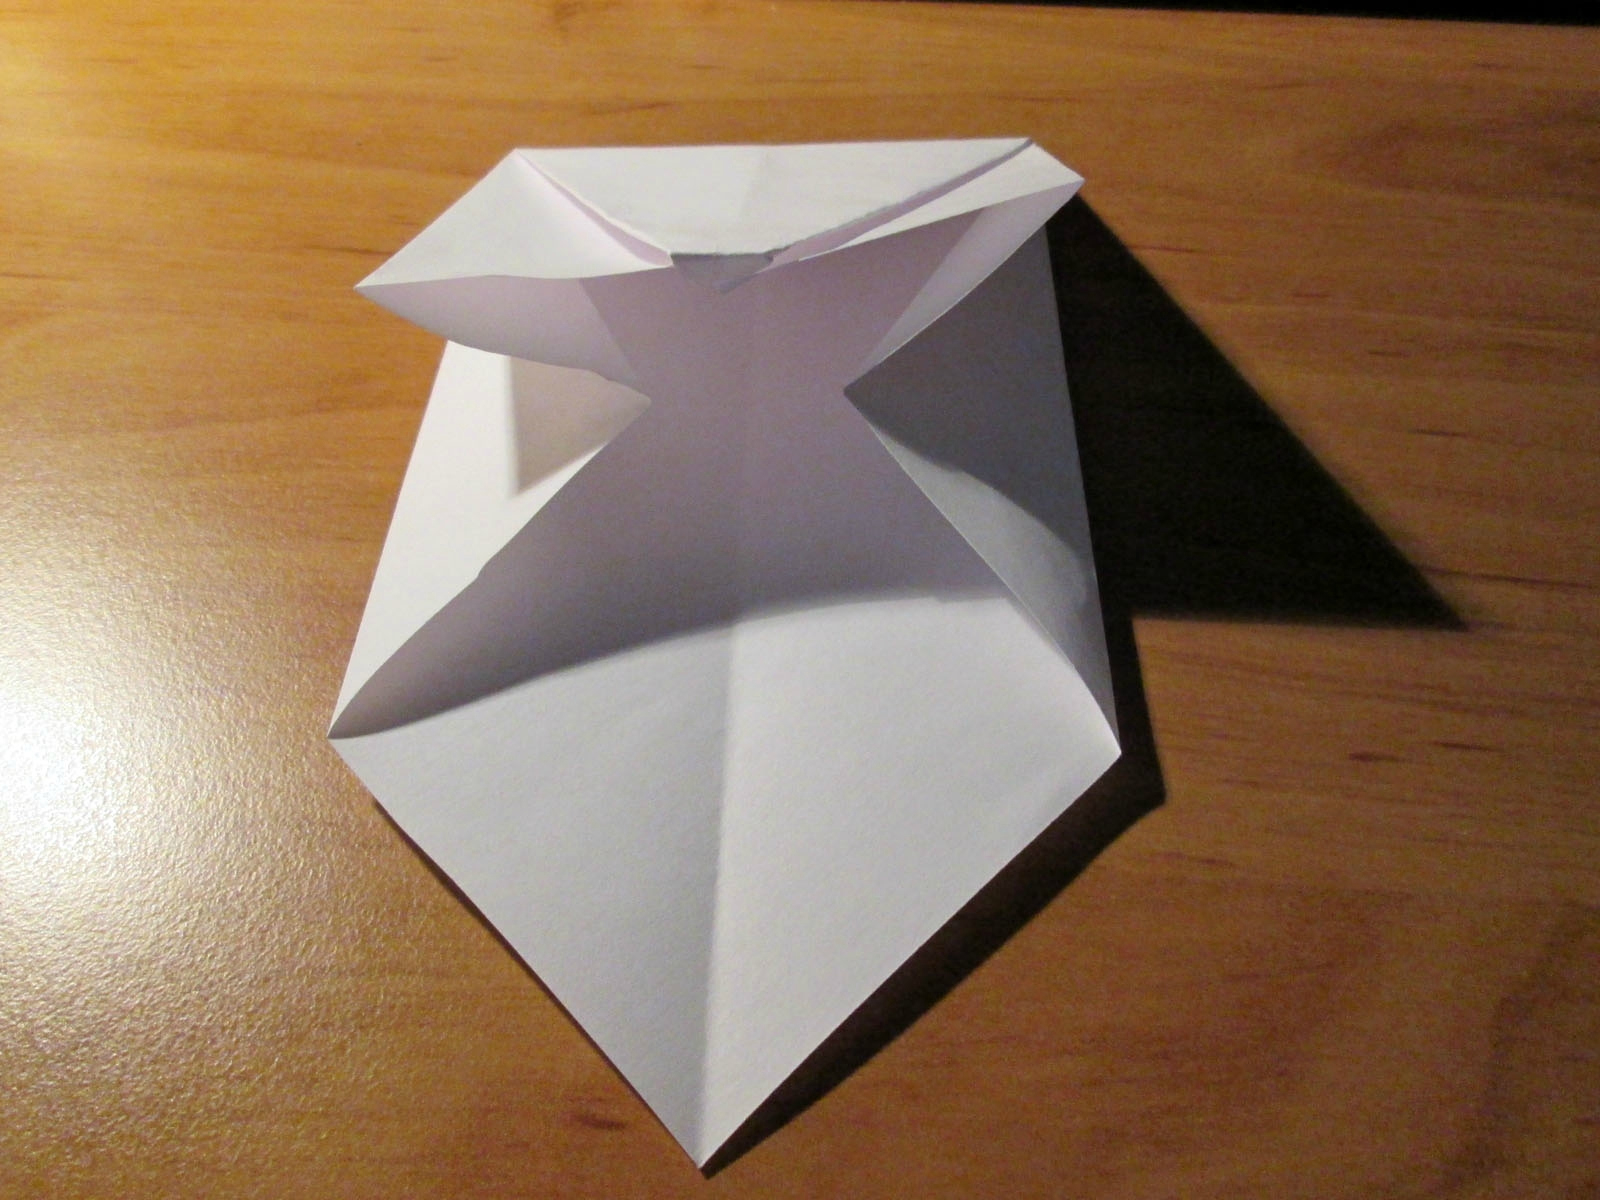 Cómo hacer un sobre de origami fácilmente.